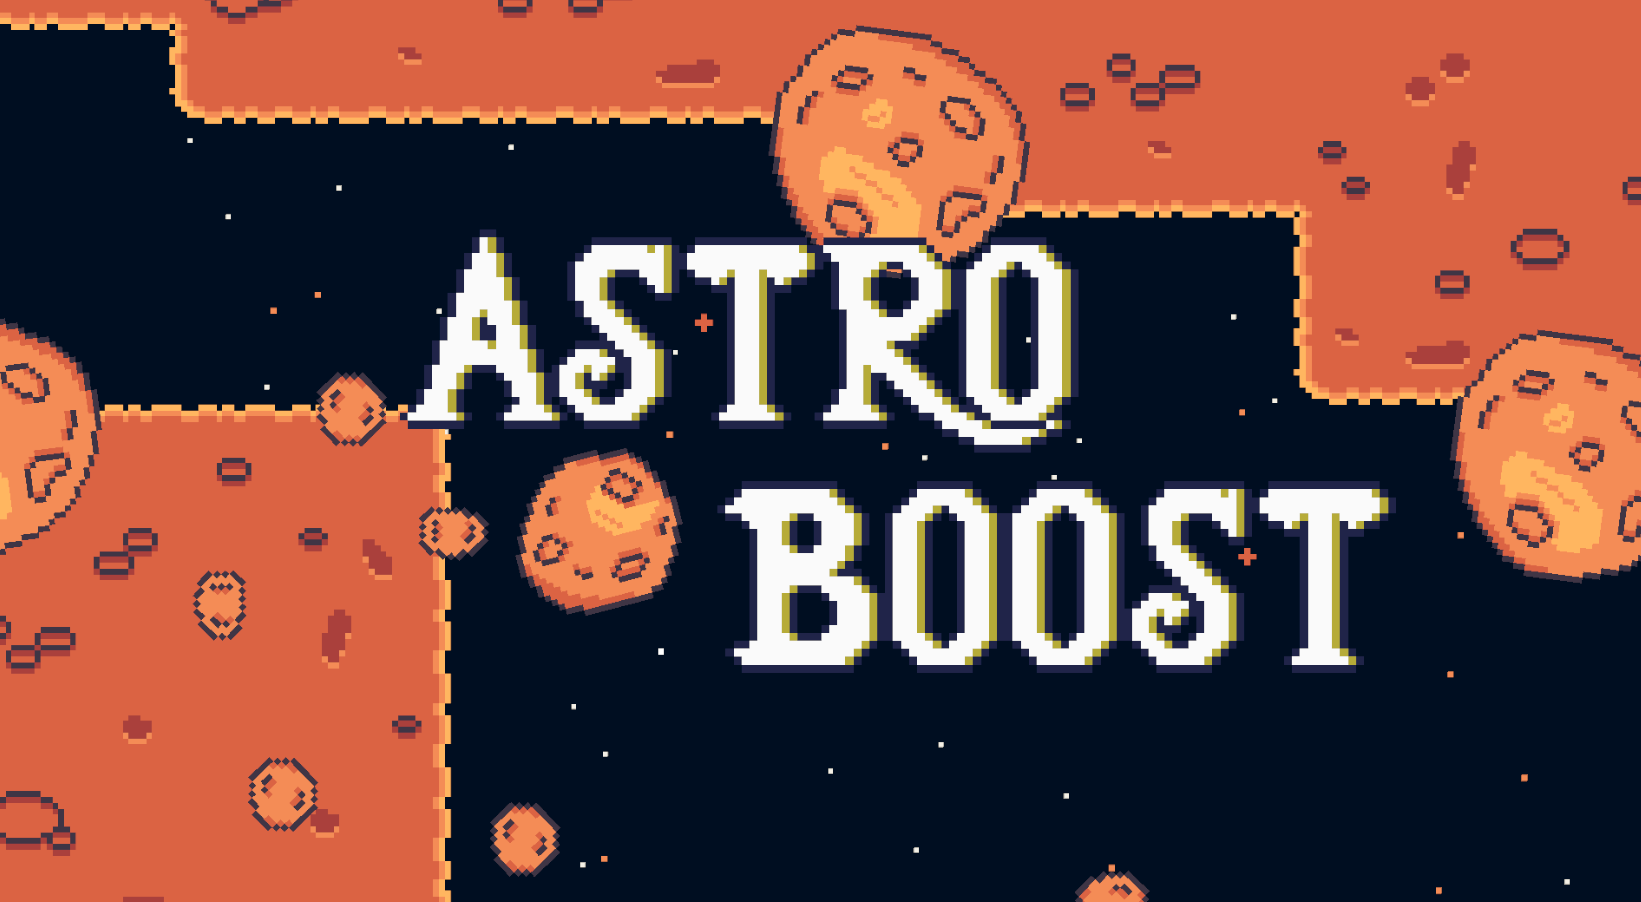 Astro Boost